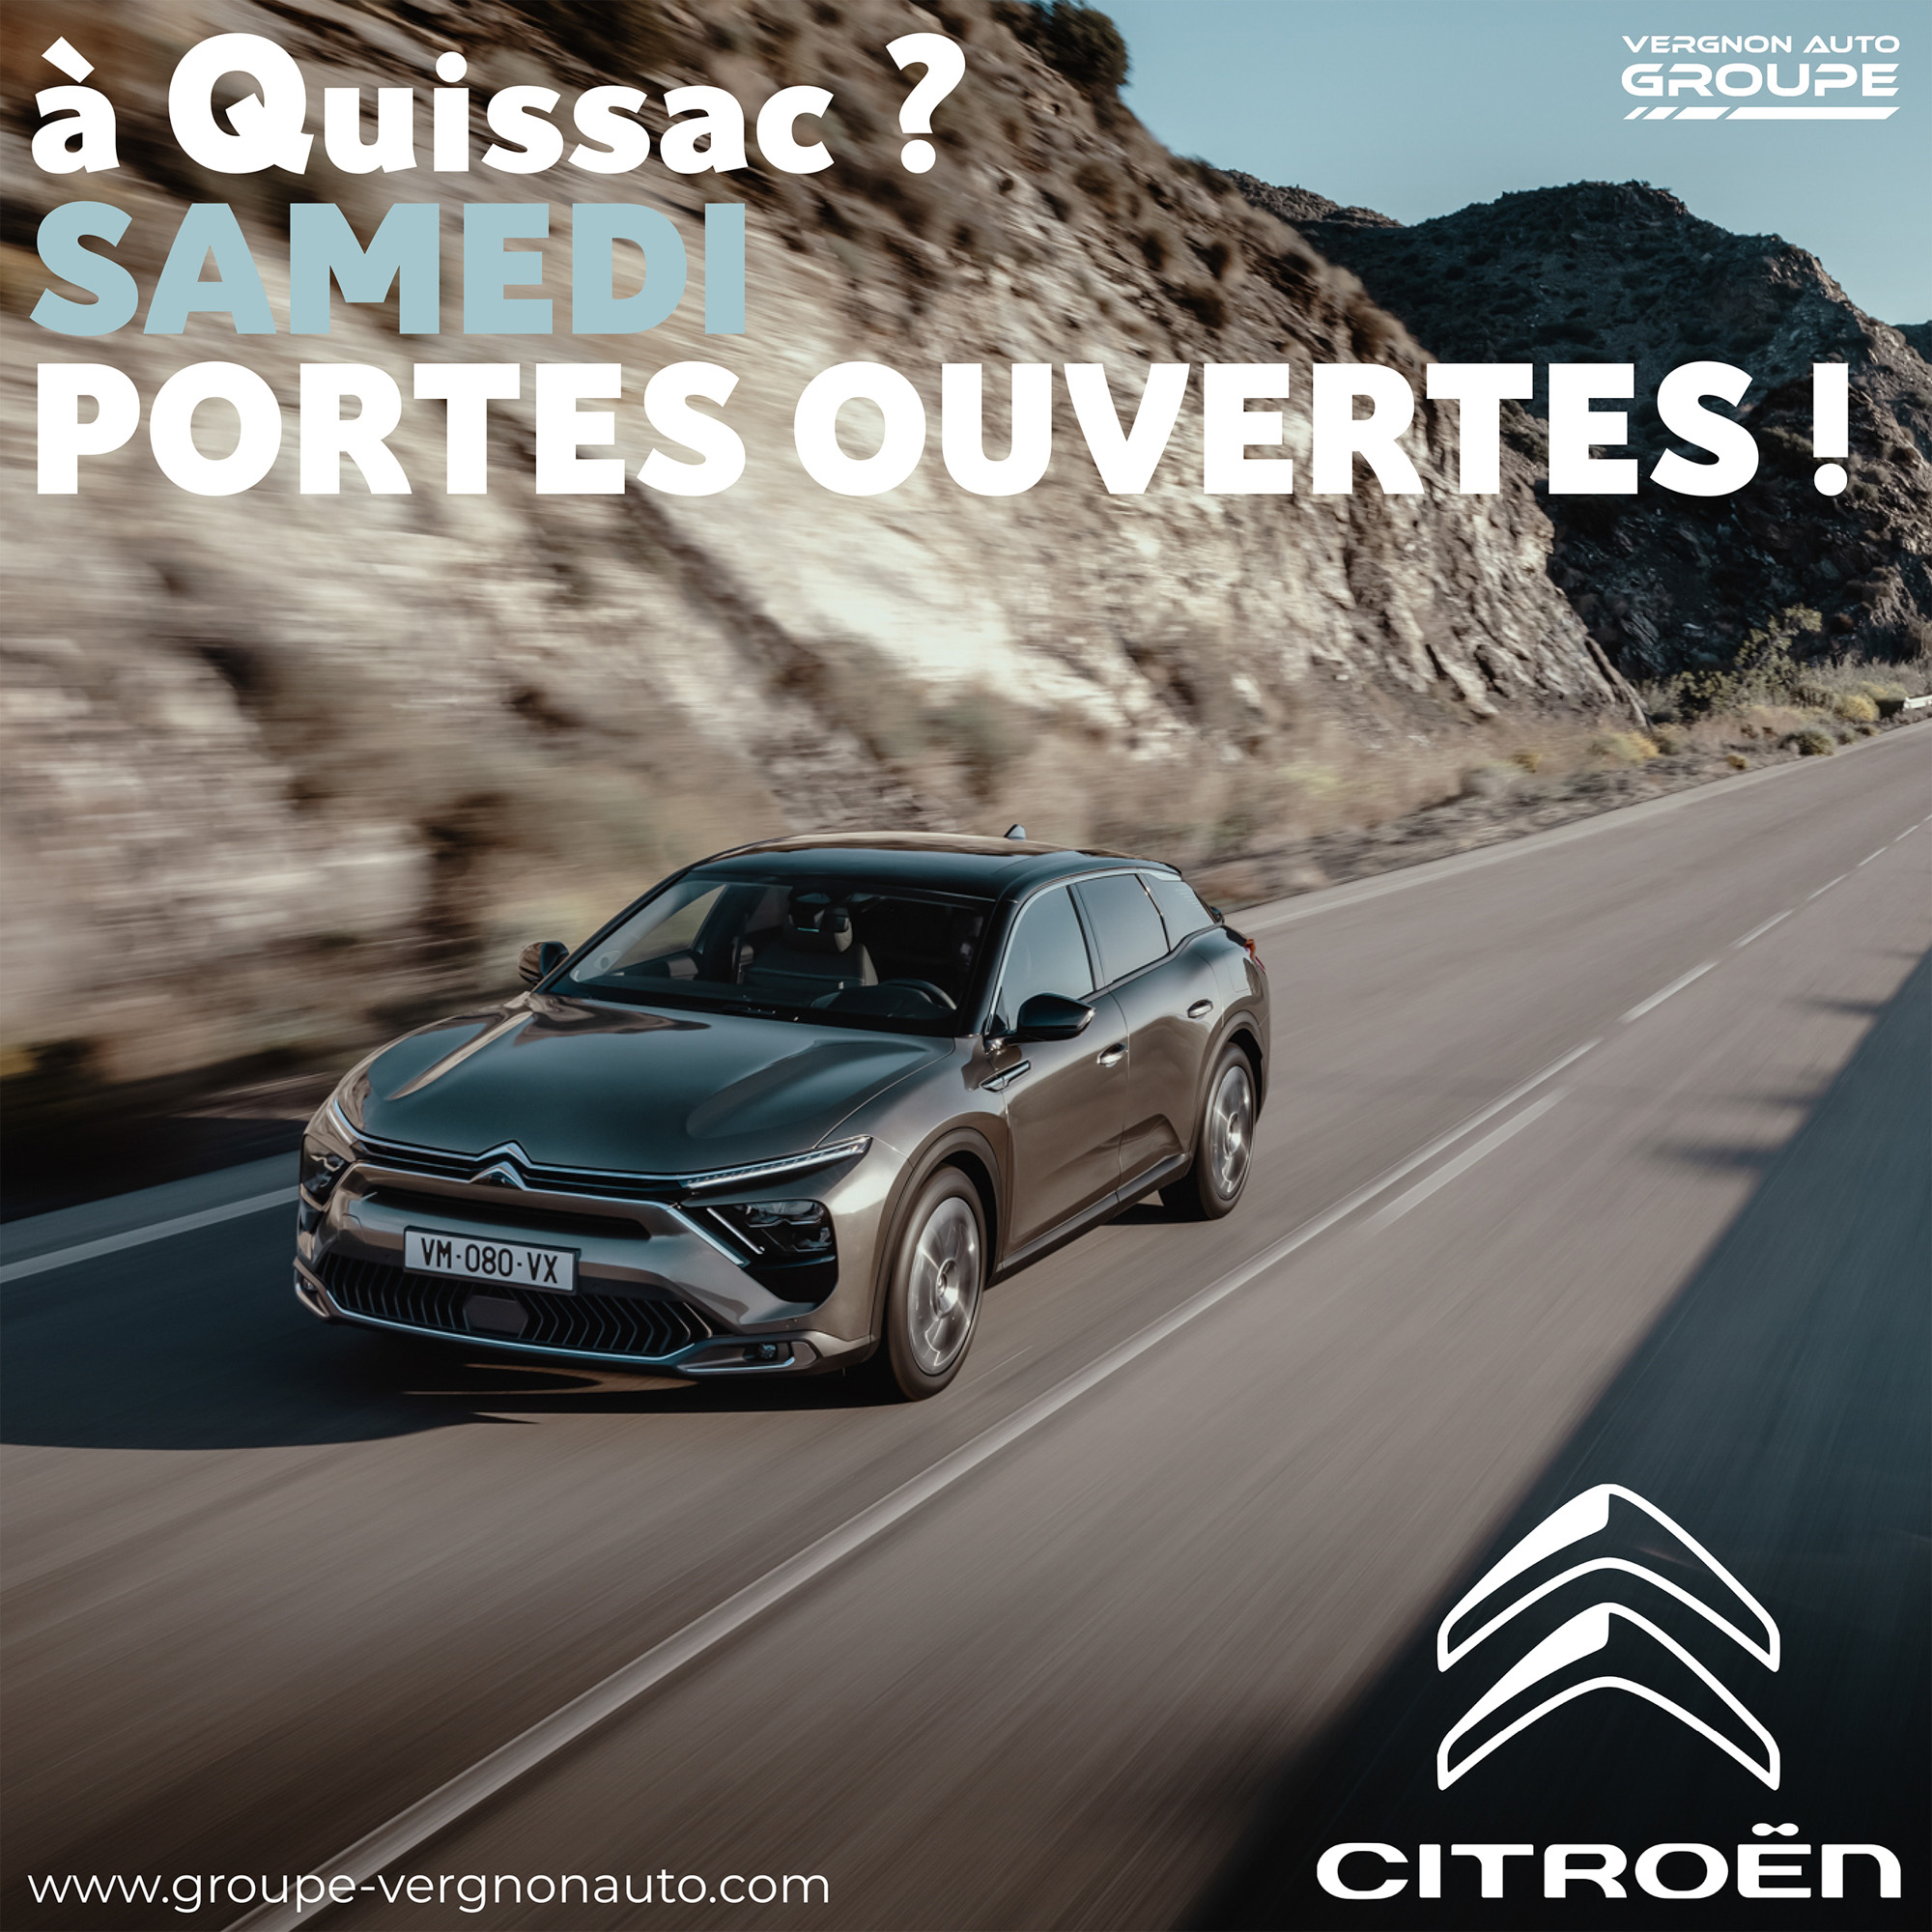 Portes ouvertes Vergnon Auto Citroën Quissac Gard 30 Piémont cévenol Occitanie